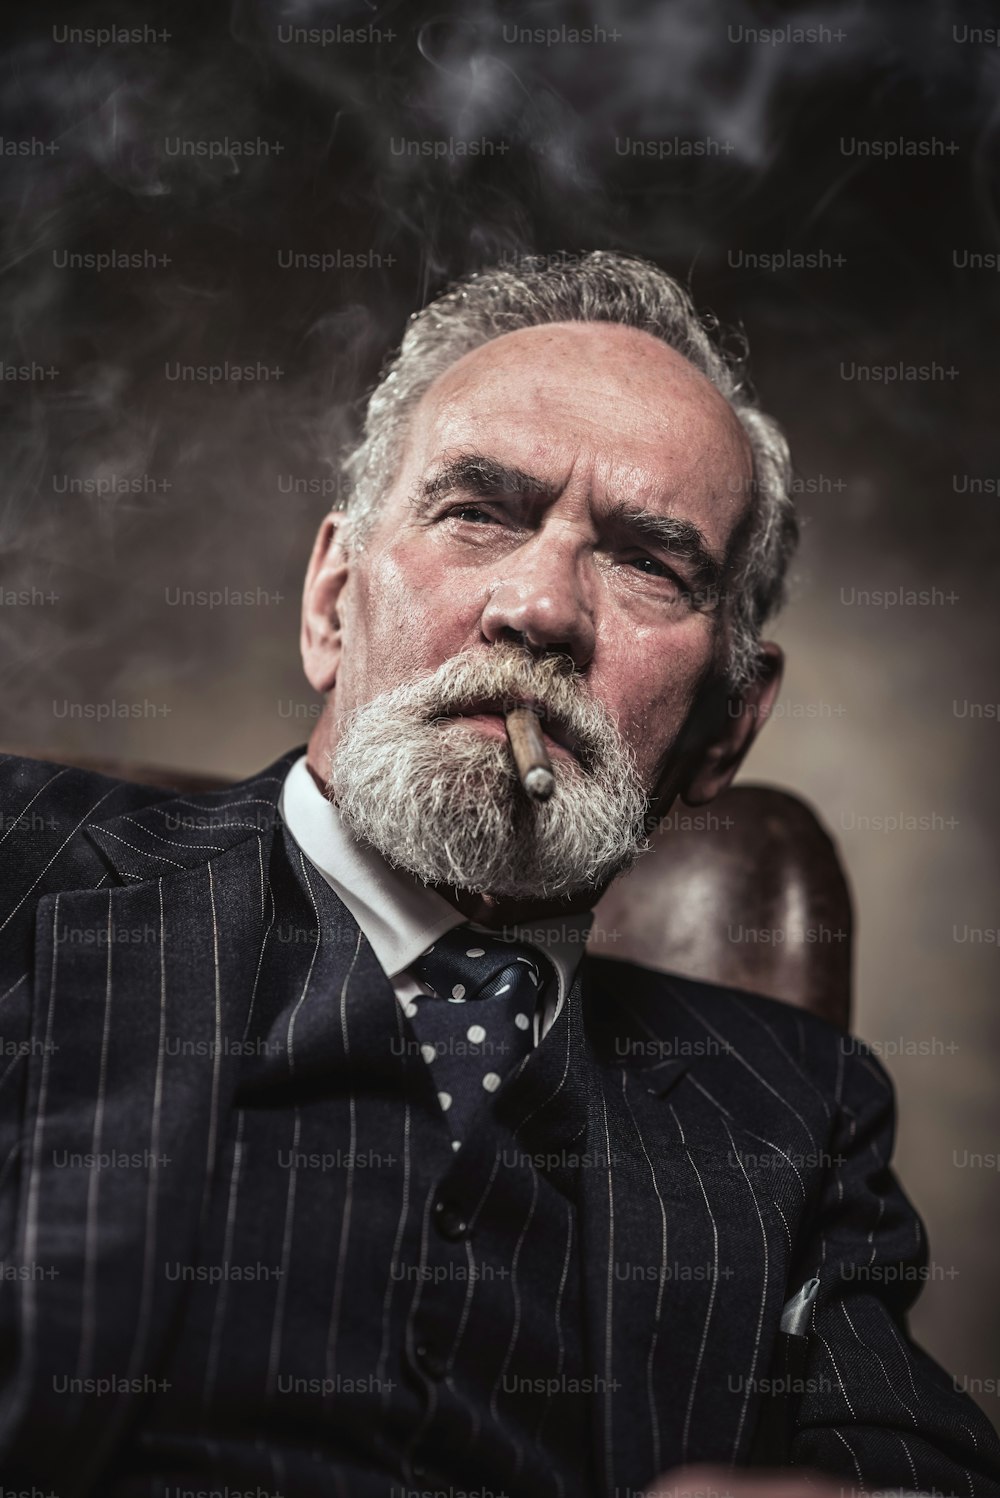 Sulla sedia seduto caratteristico uomo d'affari senior. Fumare sigaro. Capelli e barba grigi che indossano abito e cravatta a righe blu. Contro muro marrone.